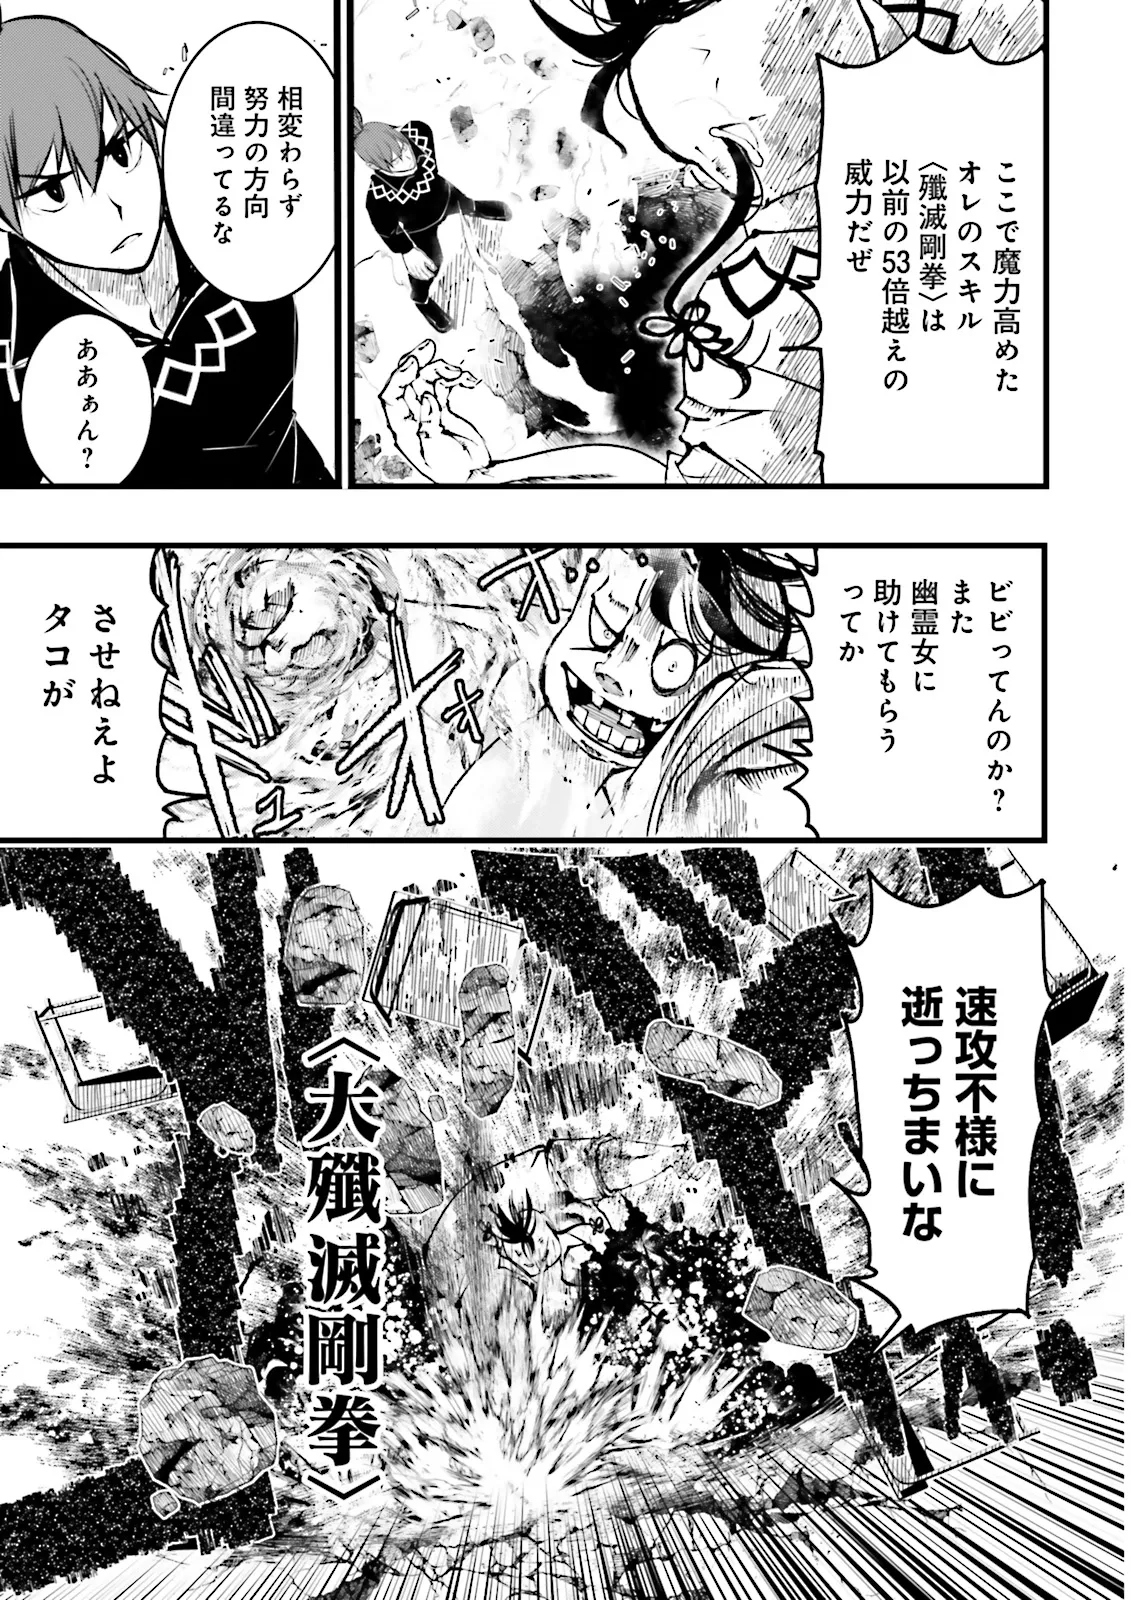 Sukiru Ga Nakereba Level wo Ageru ~ 99 Ga Kansuto No Sekai De Reberu 800 Man Kara Sutato ~ - Chapter 39.1 - Page 8